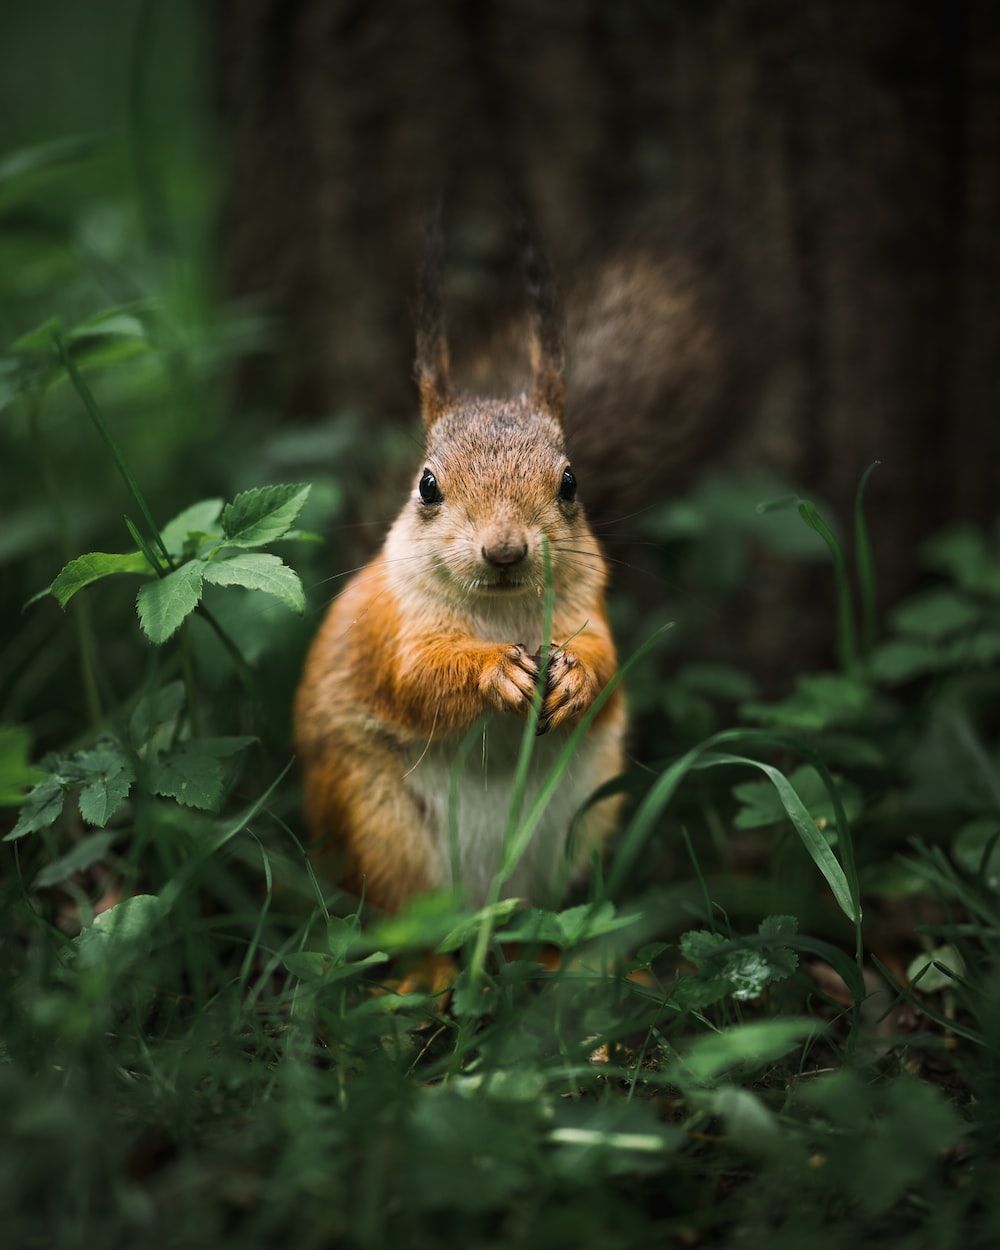  Eichhornchen Hintergrundbild 1000x1250. Squirrel Picture. Download Free Image